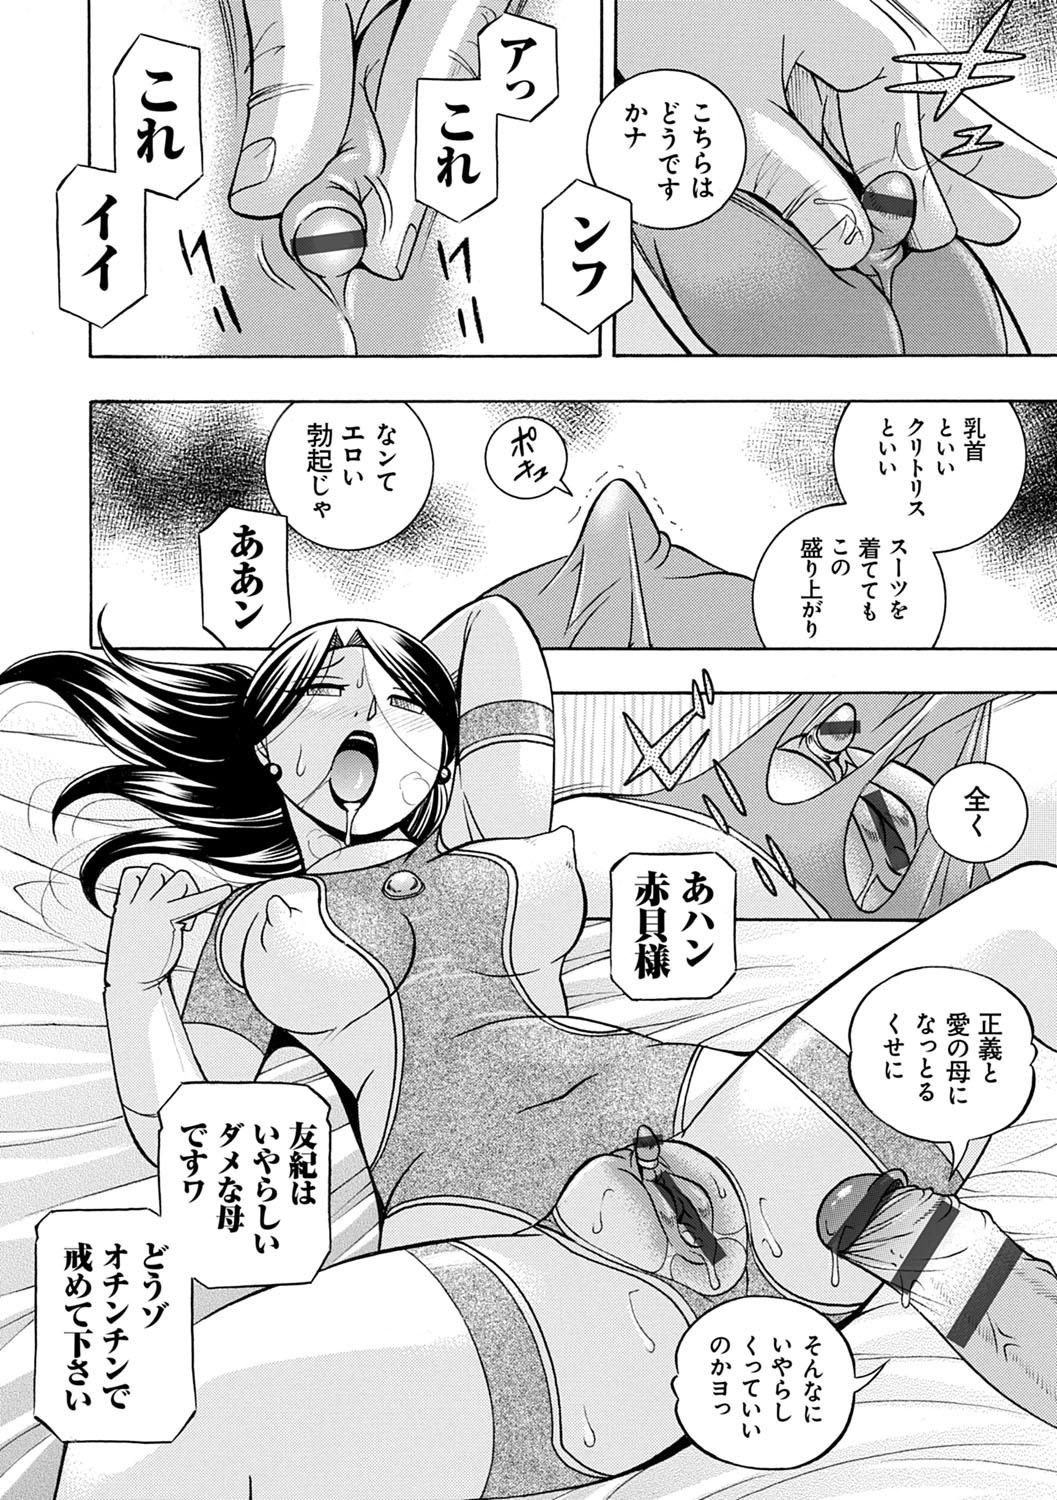 [Chuuka Naruto] Bijin Shachou Yuki ~Mitsuyaku no Nikusettai~ - YUKI of The Beautiful Chief Executive Officer ~The secret sweet treaty by sexual reception~ [Digital] 190